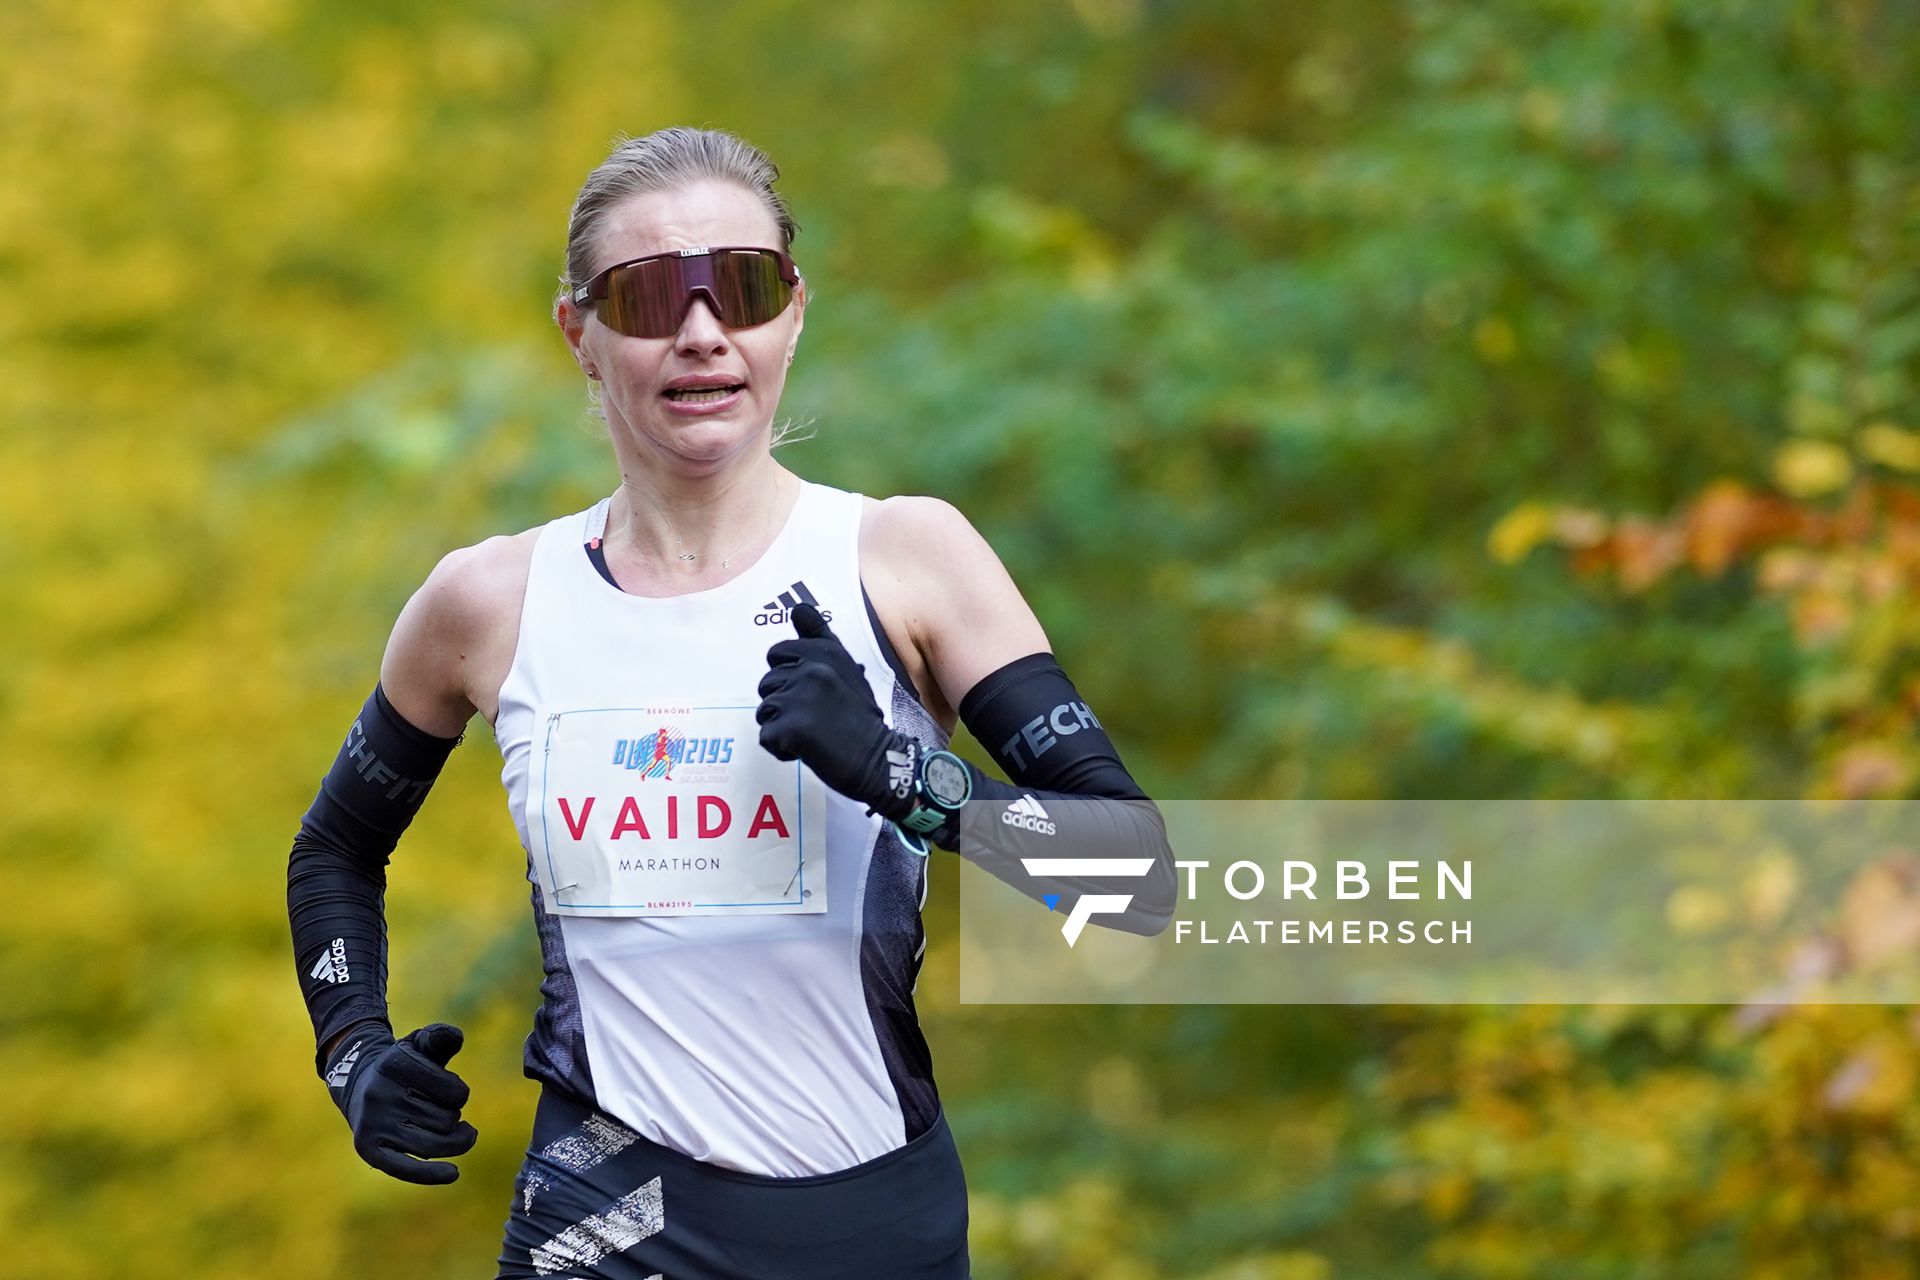 Vaida Zusinaite (Lithuania) am 25.10.2020 beim BLN 42195 Halbmarathon & Marathon in Bernoewe (Stadt Oranienburg)